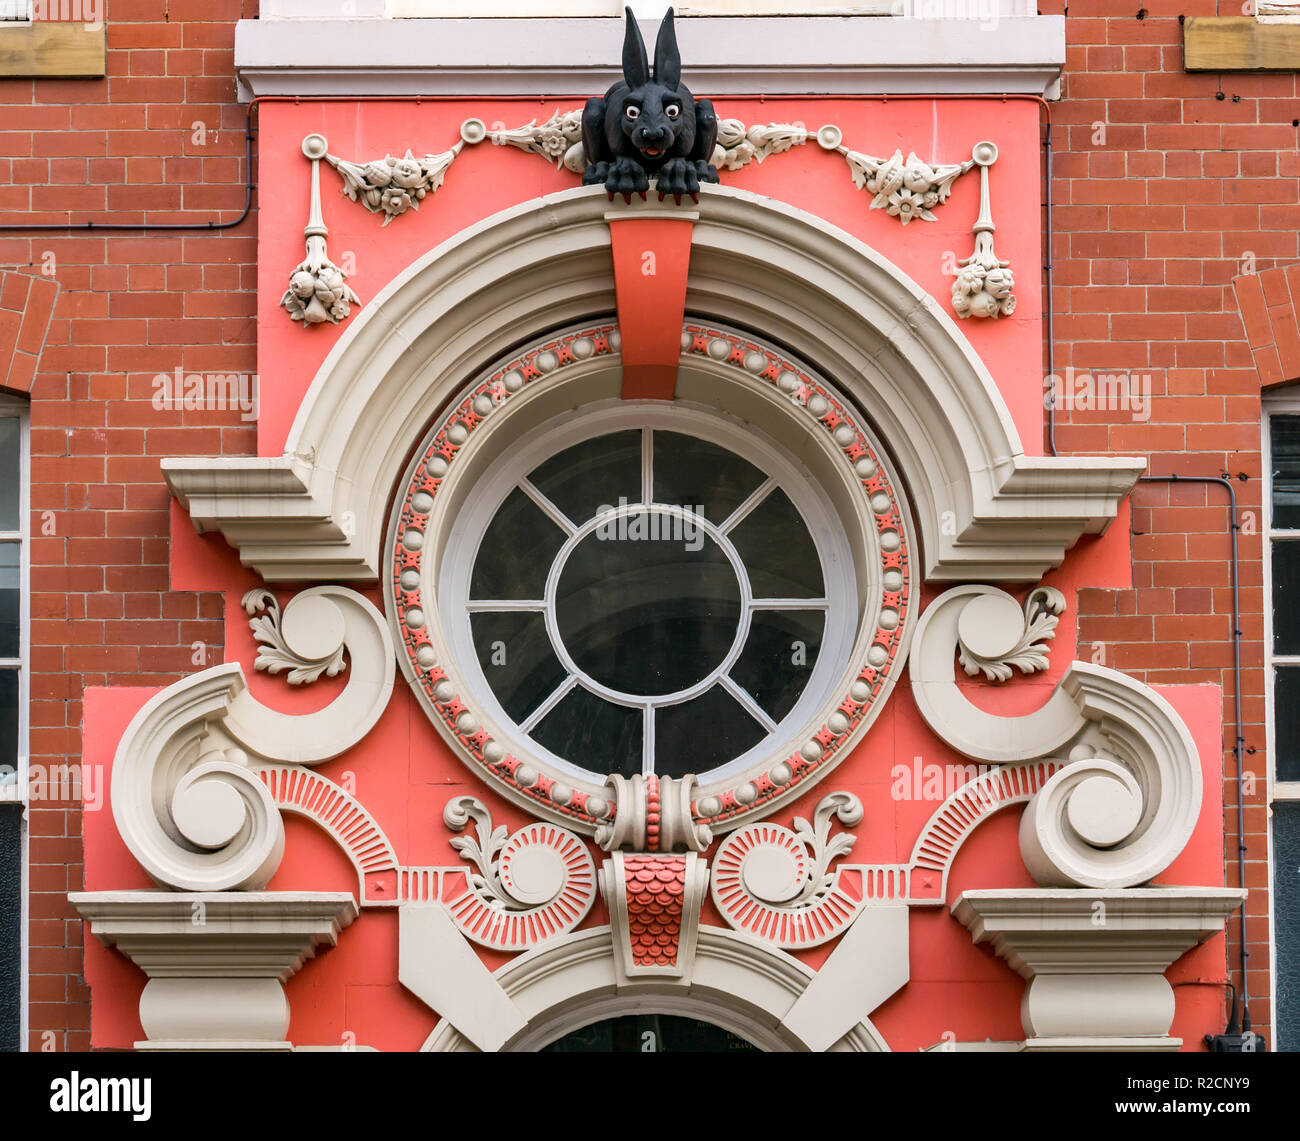 Reich verzierte Tür Collingwood House mit Vampir Kaninchen und Oberlicht, Amen Corner, St Nicholas Church Yard Gebäude, Newcastle Upon Tyne, England, Großbritannien Stockfoto